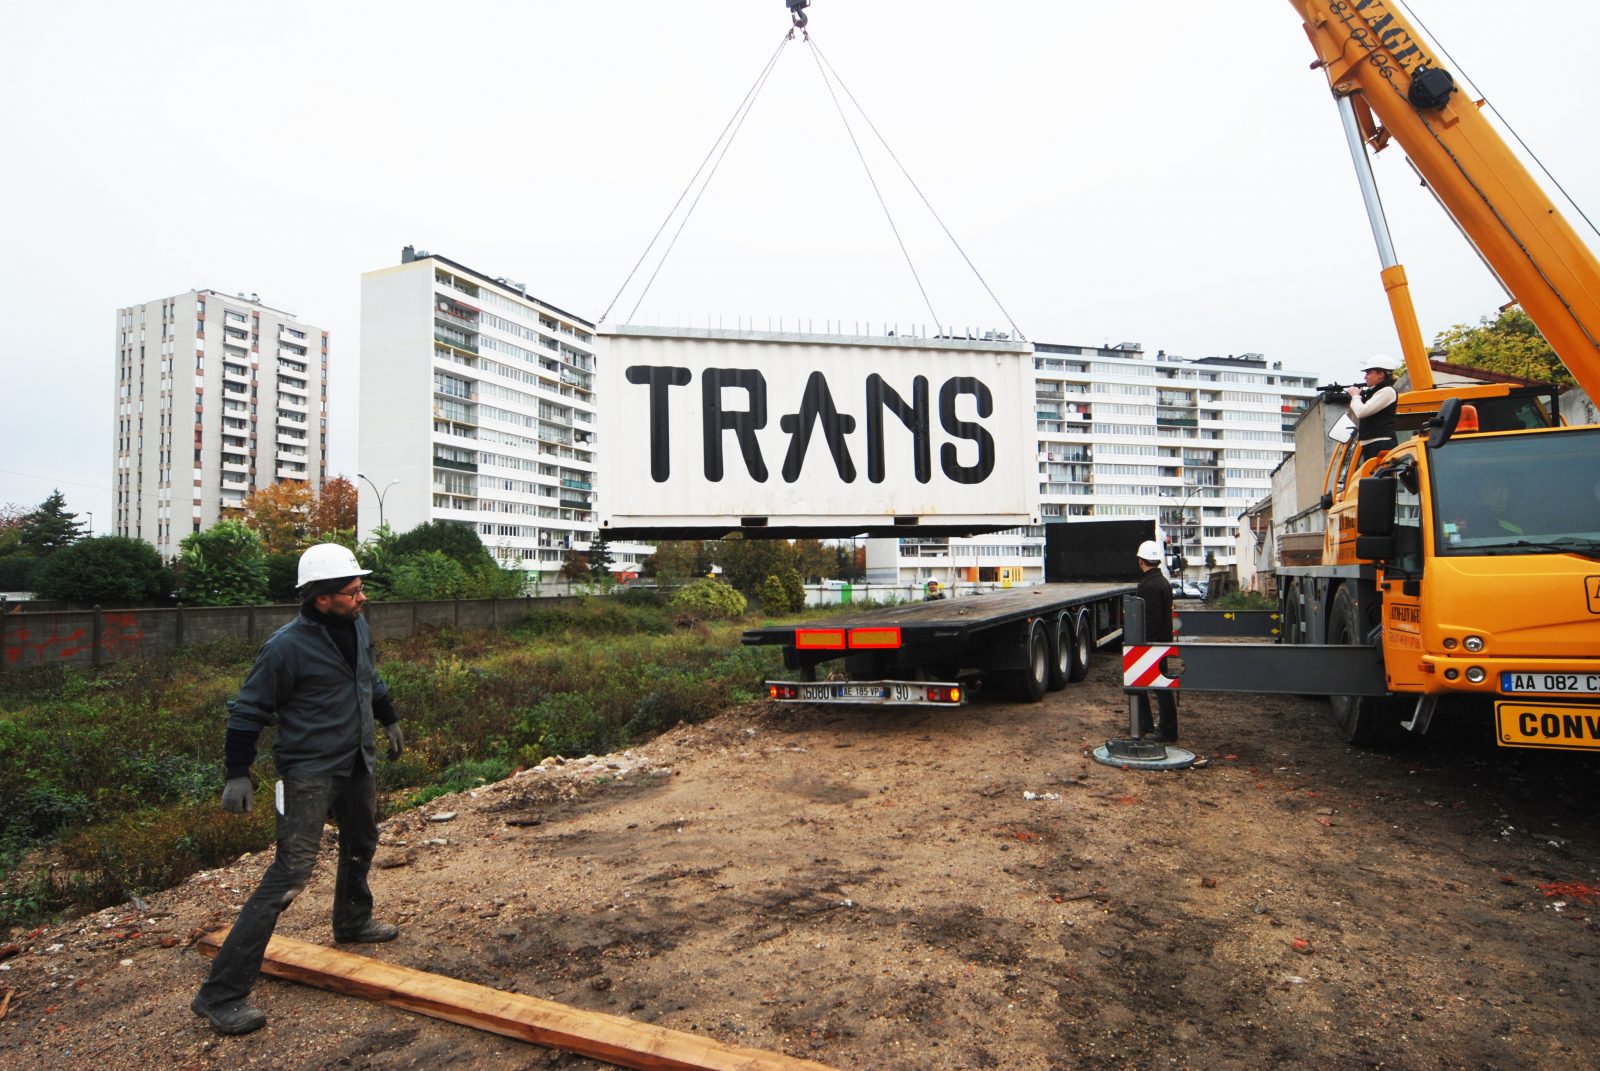 Atelier / TRANS n°5 — Trans305 / Stefan Shankland